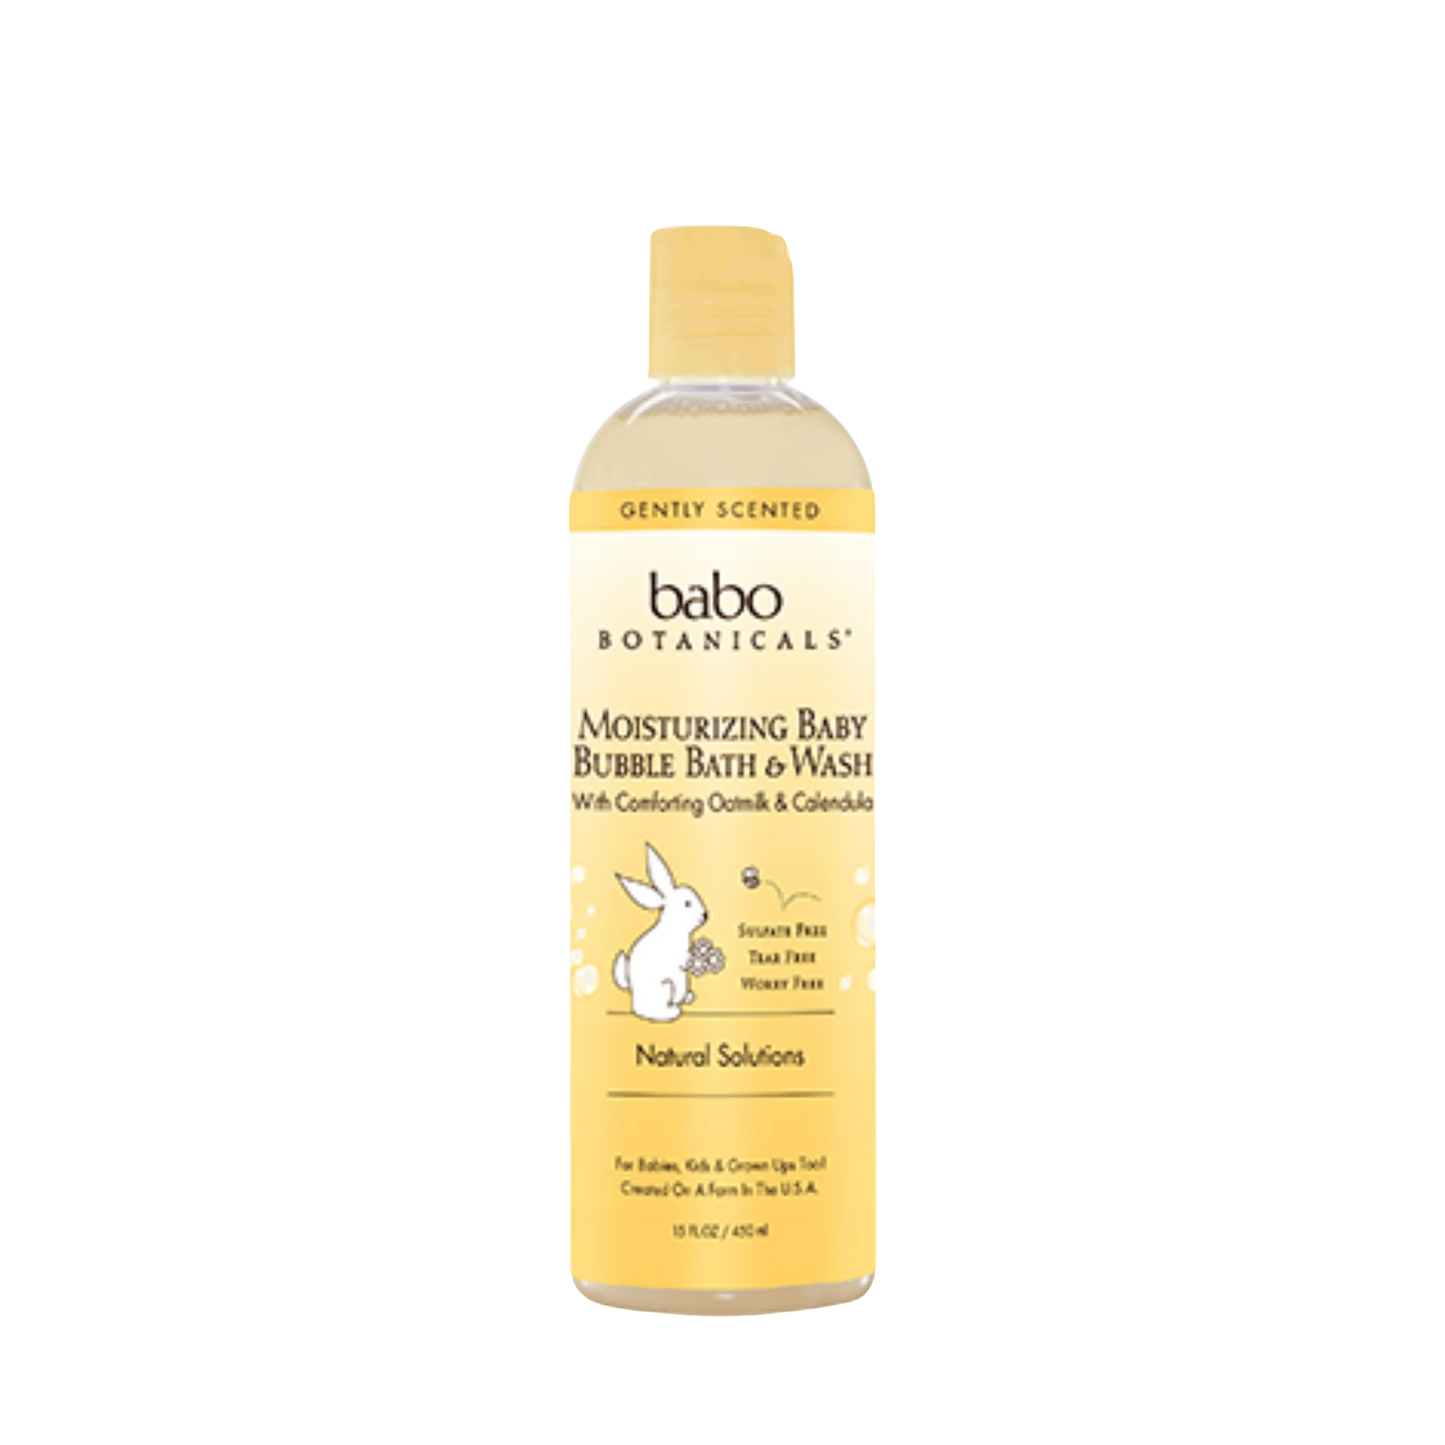 Babo Botanicals Moisturizing Baby Bubble Bath & Wash